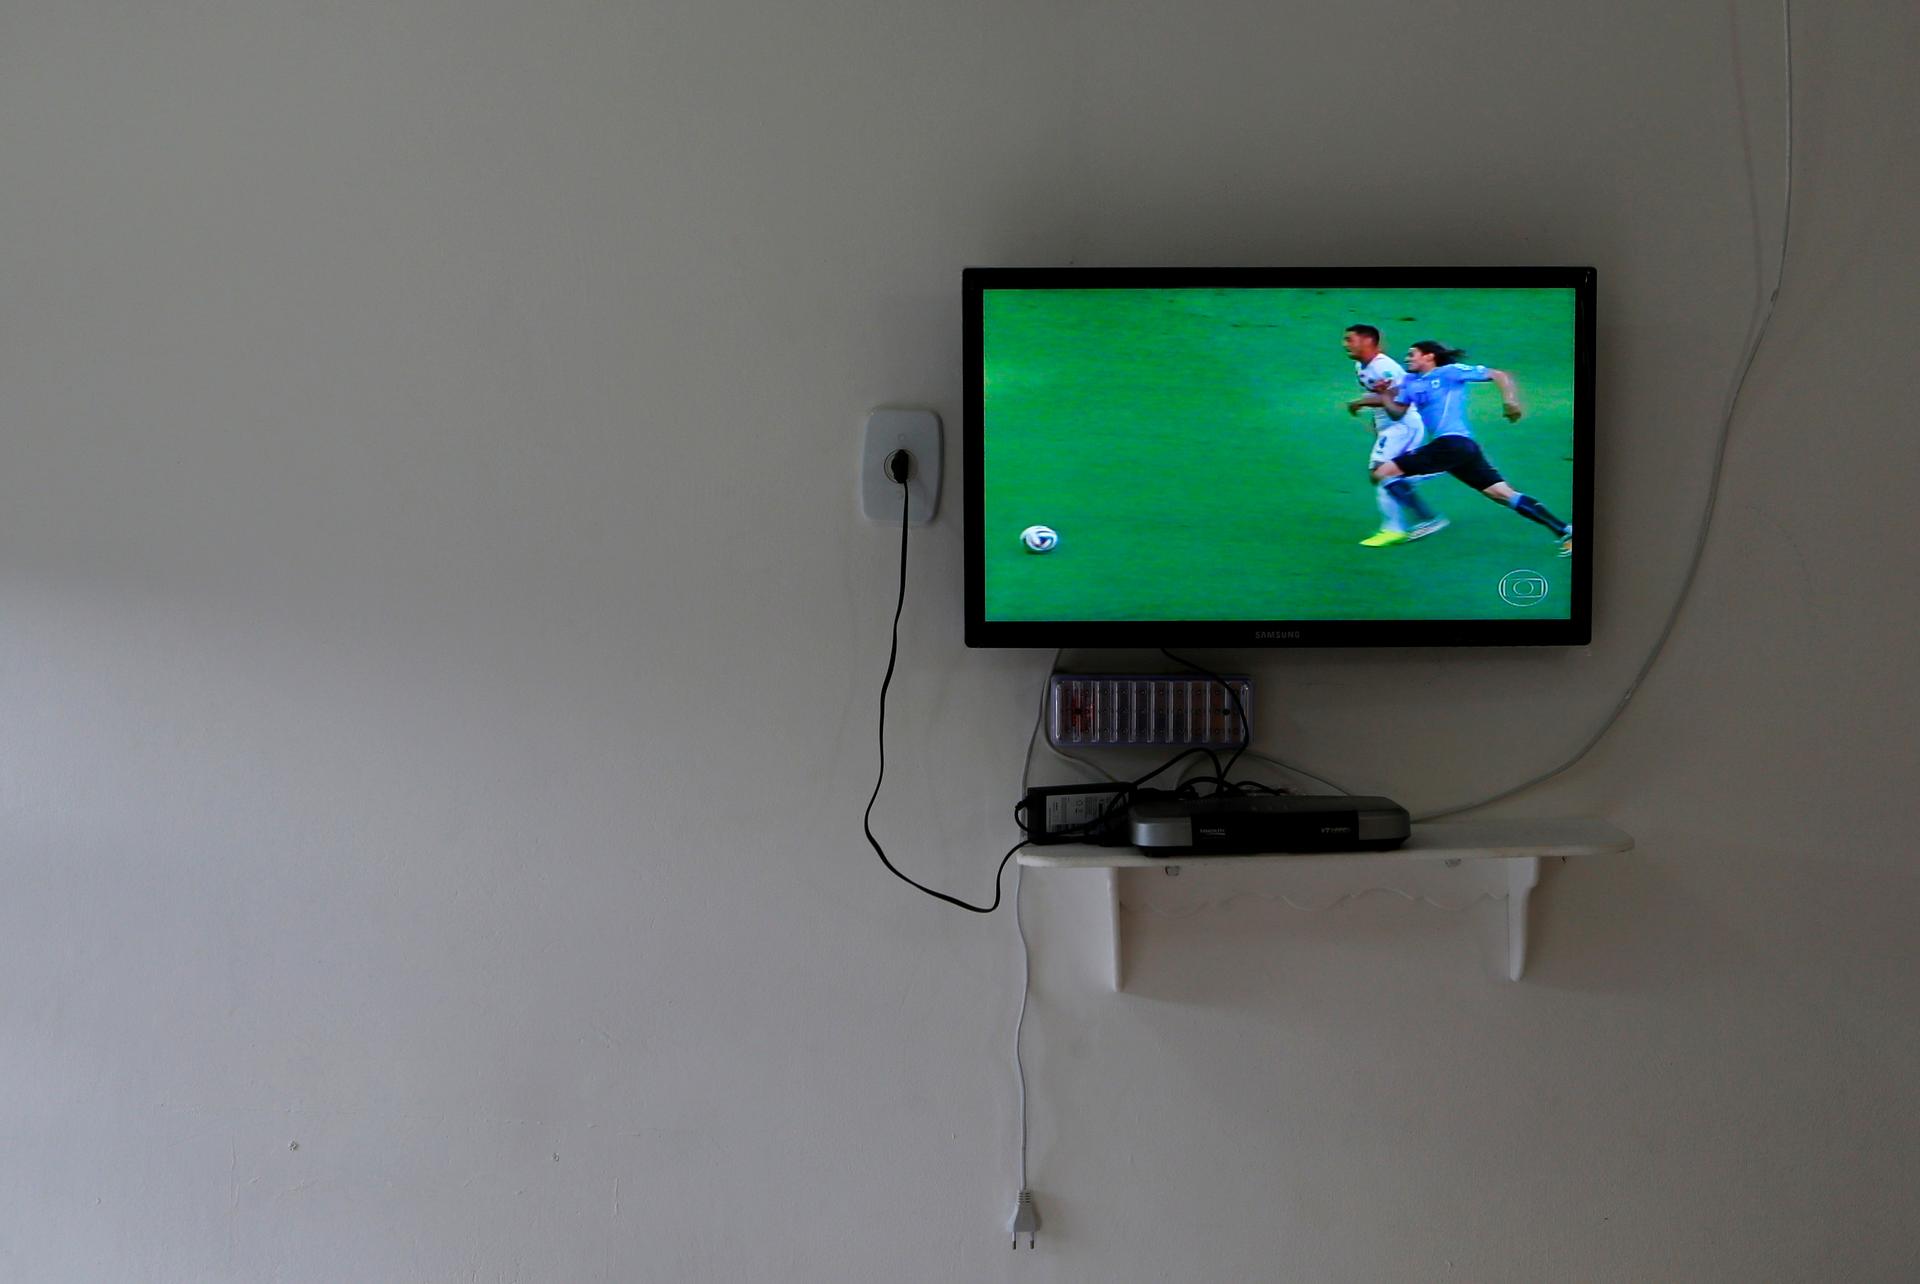 A TV plays a soccer match